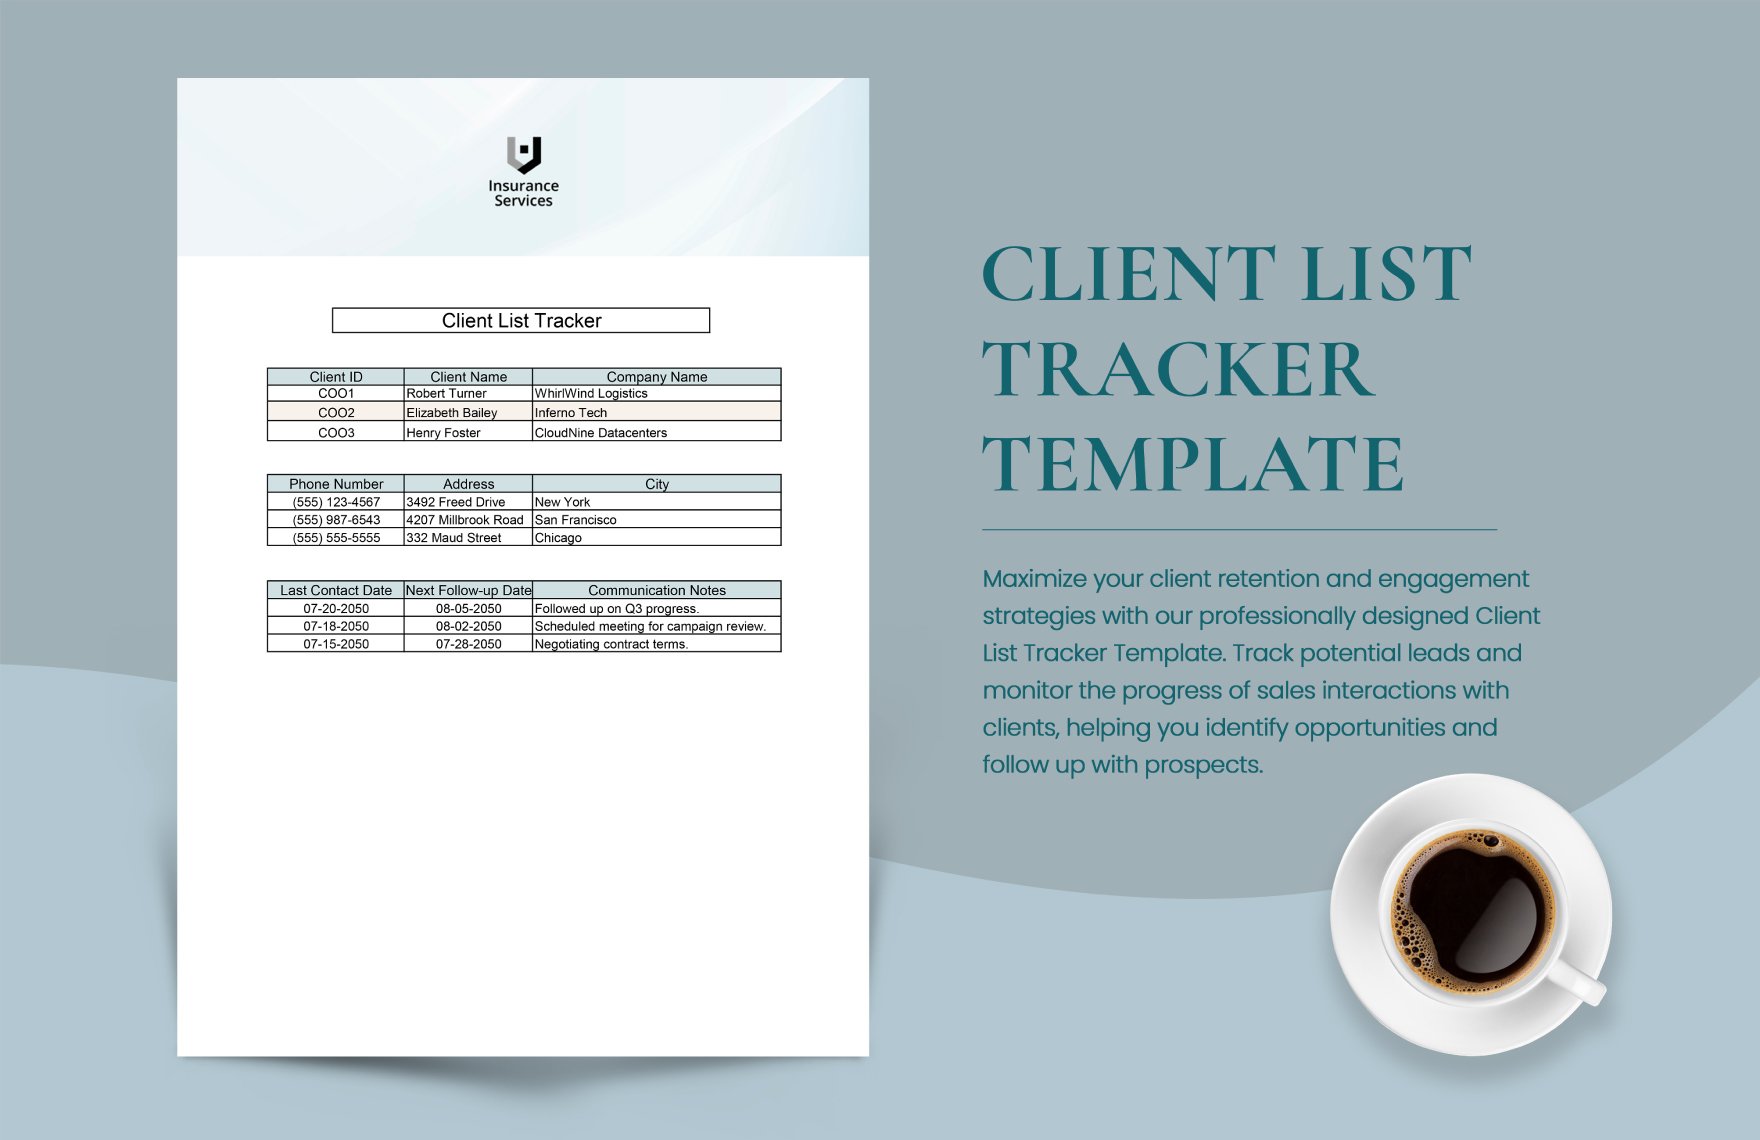 Client List Tracker Template